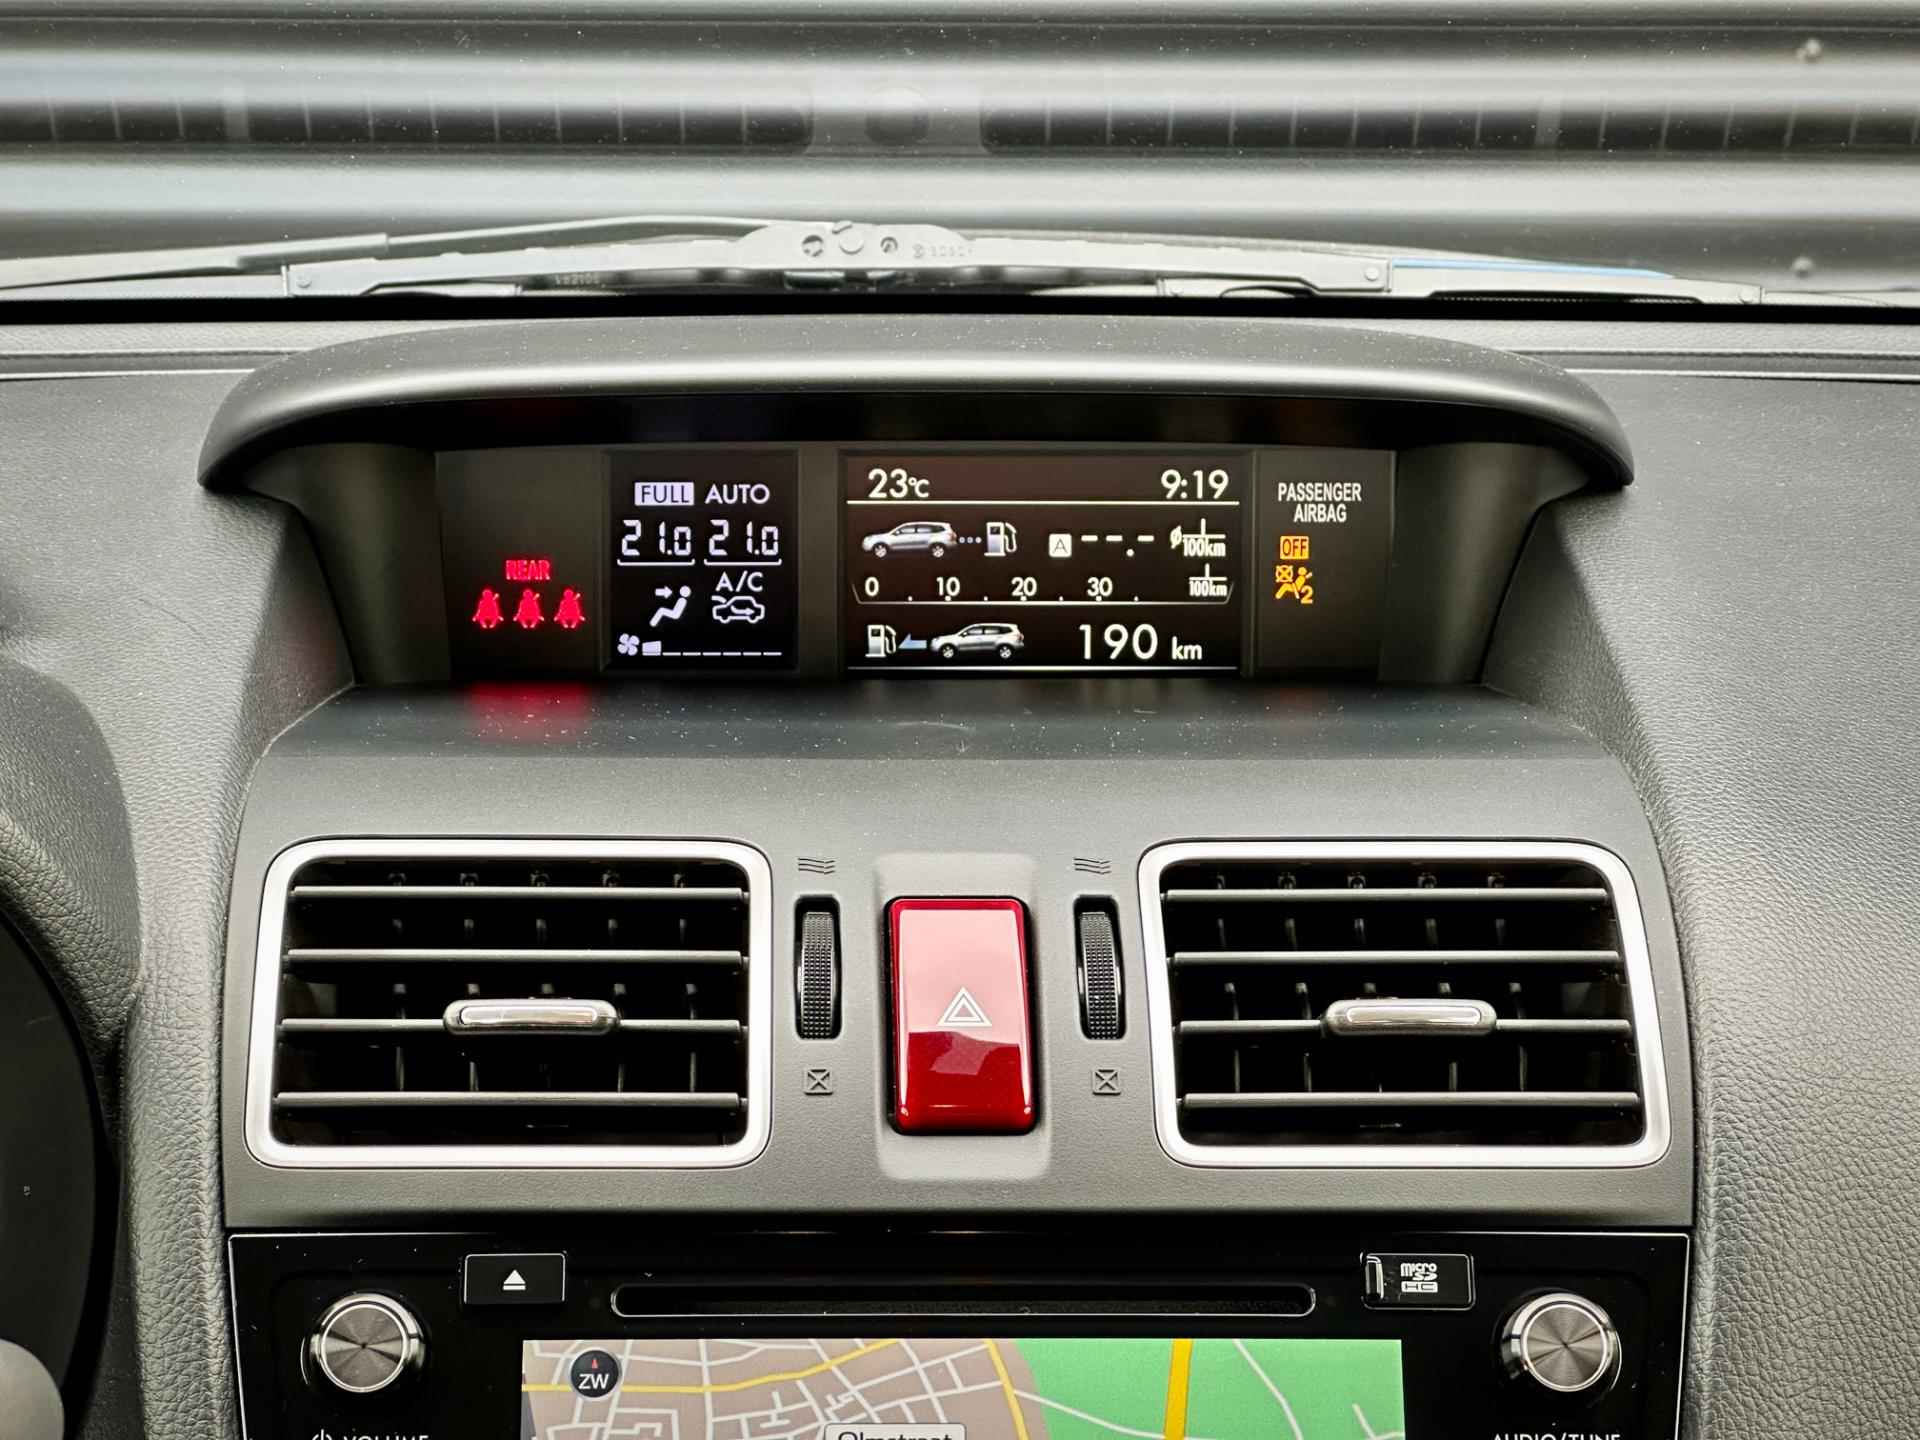 Subaru Forester 2.0D Premium | Clima | Cruise | Leder | Panorama dak | Trekhaak afn. | Harman Kardon | Xenon | - 16/65